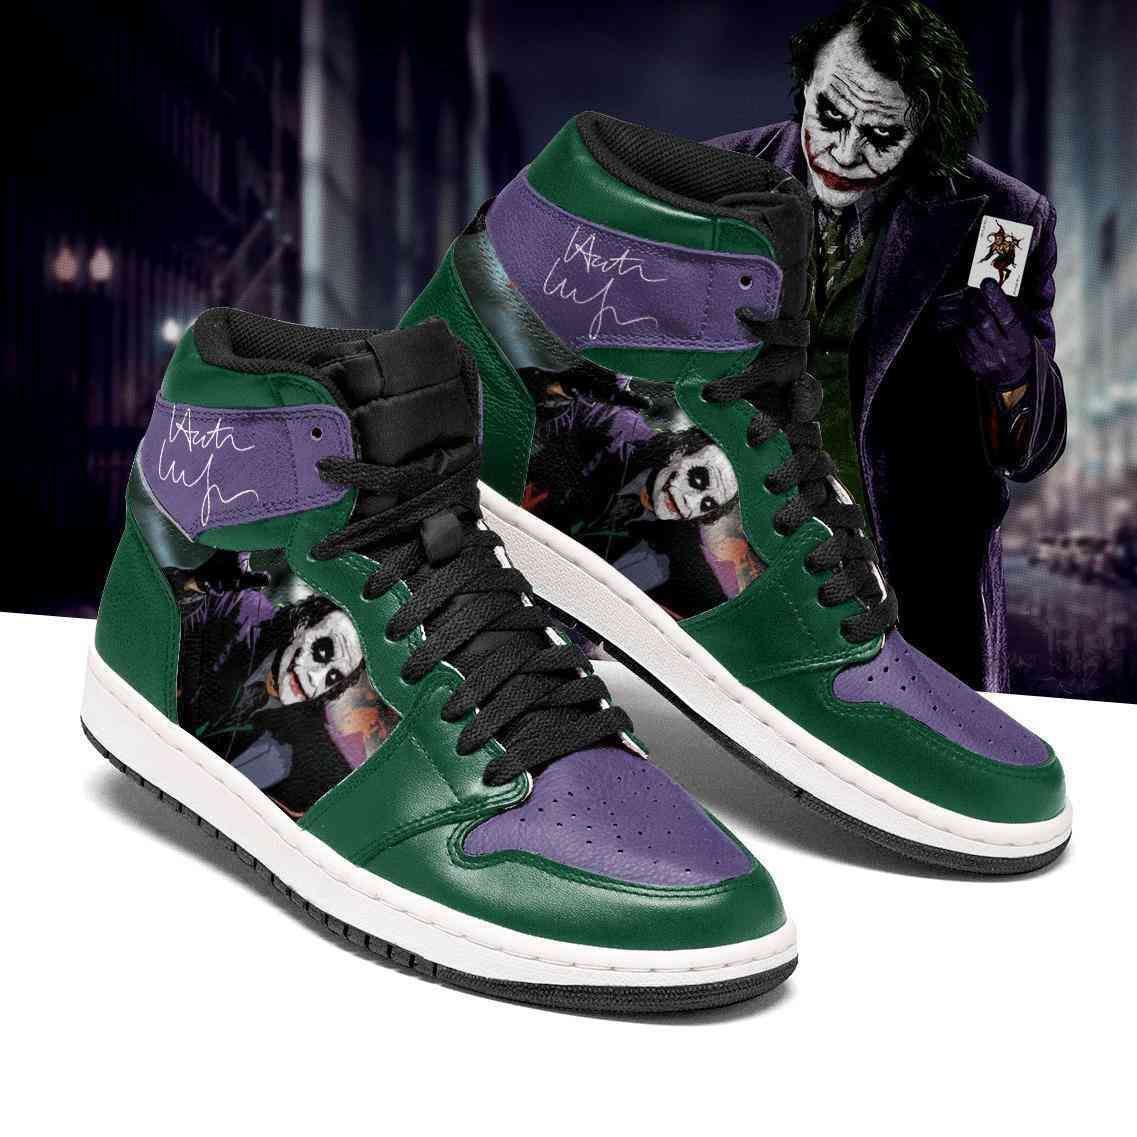 Joker Dc Comics 3 Air Jordan Shoes Sport Sneakers